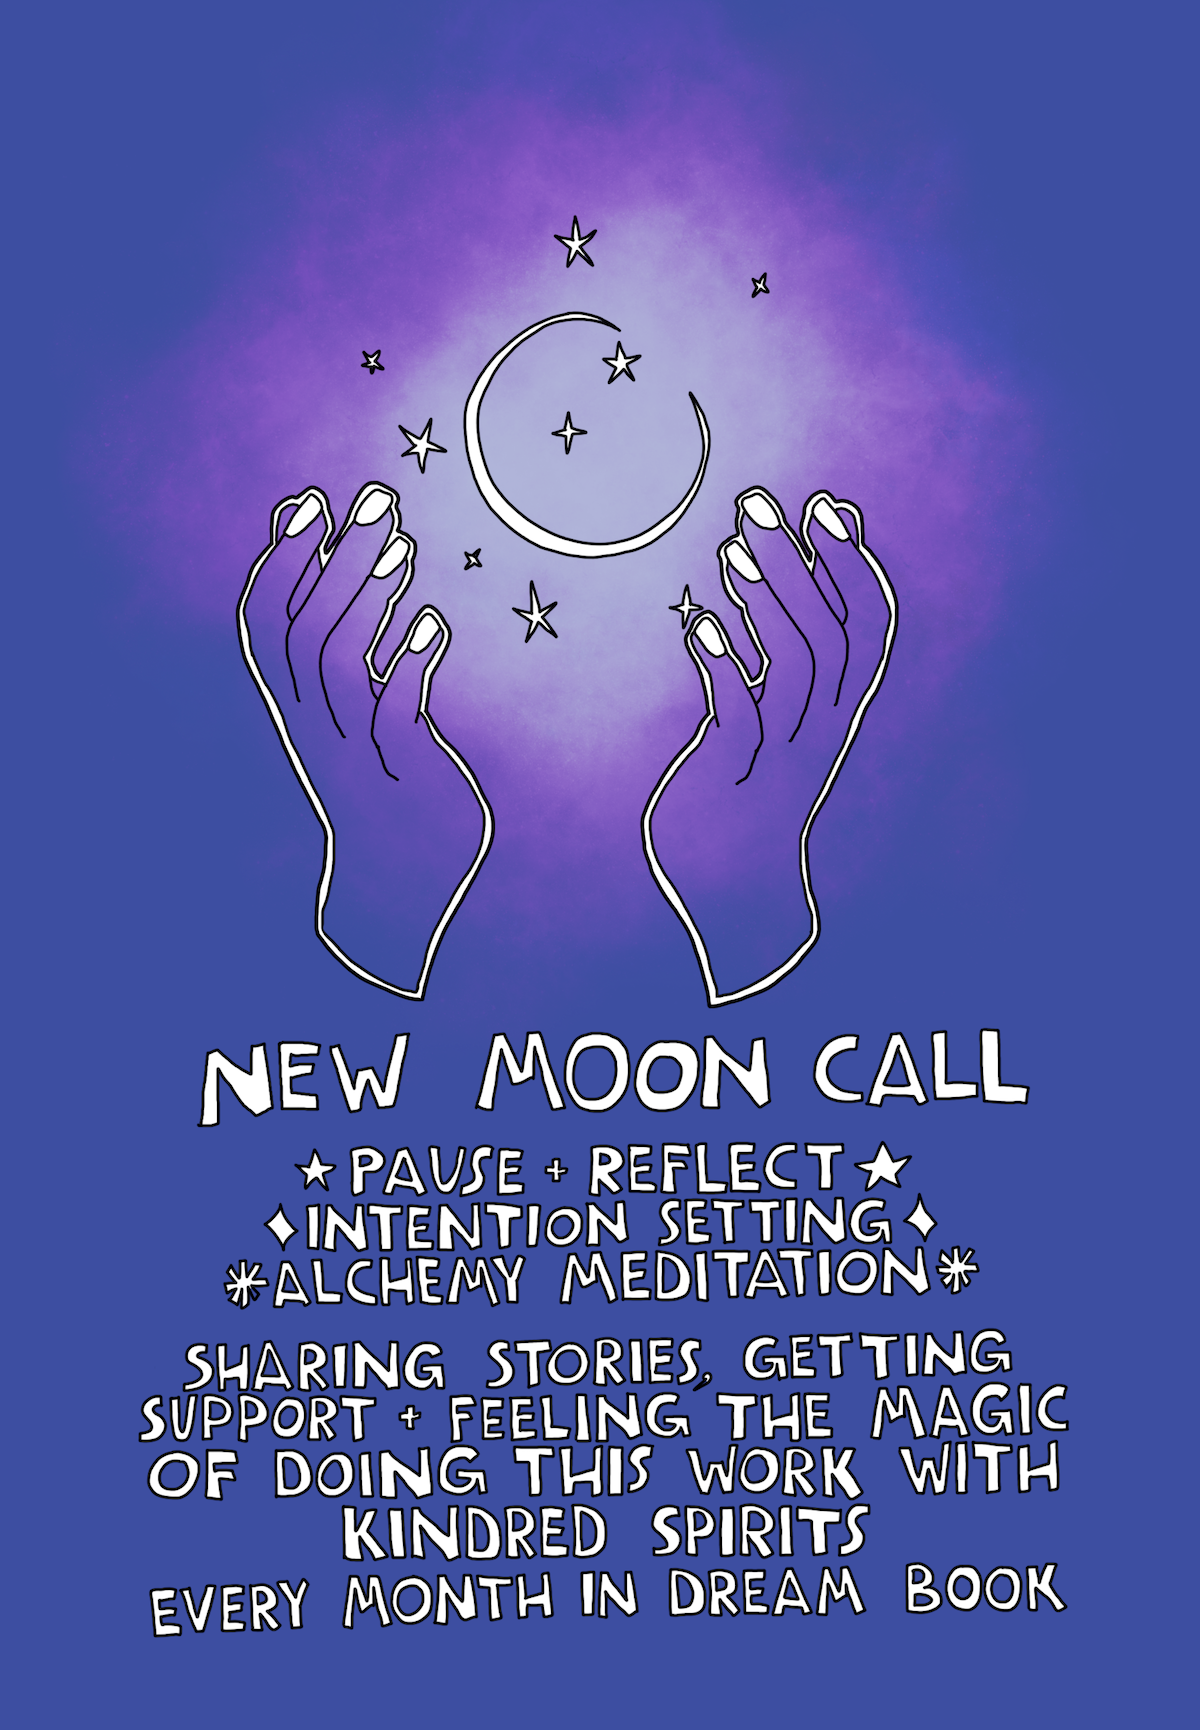 Tomorrow: January New Moon Call